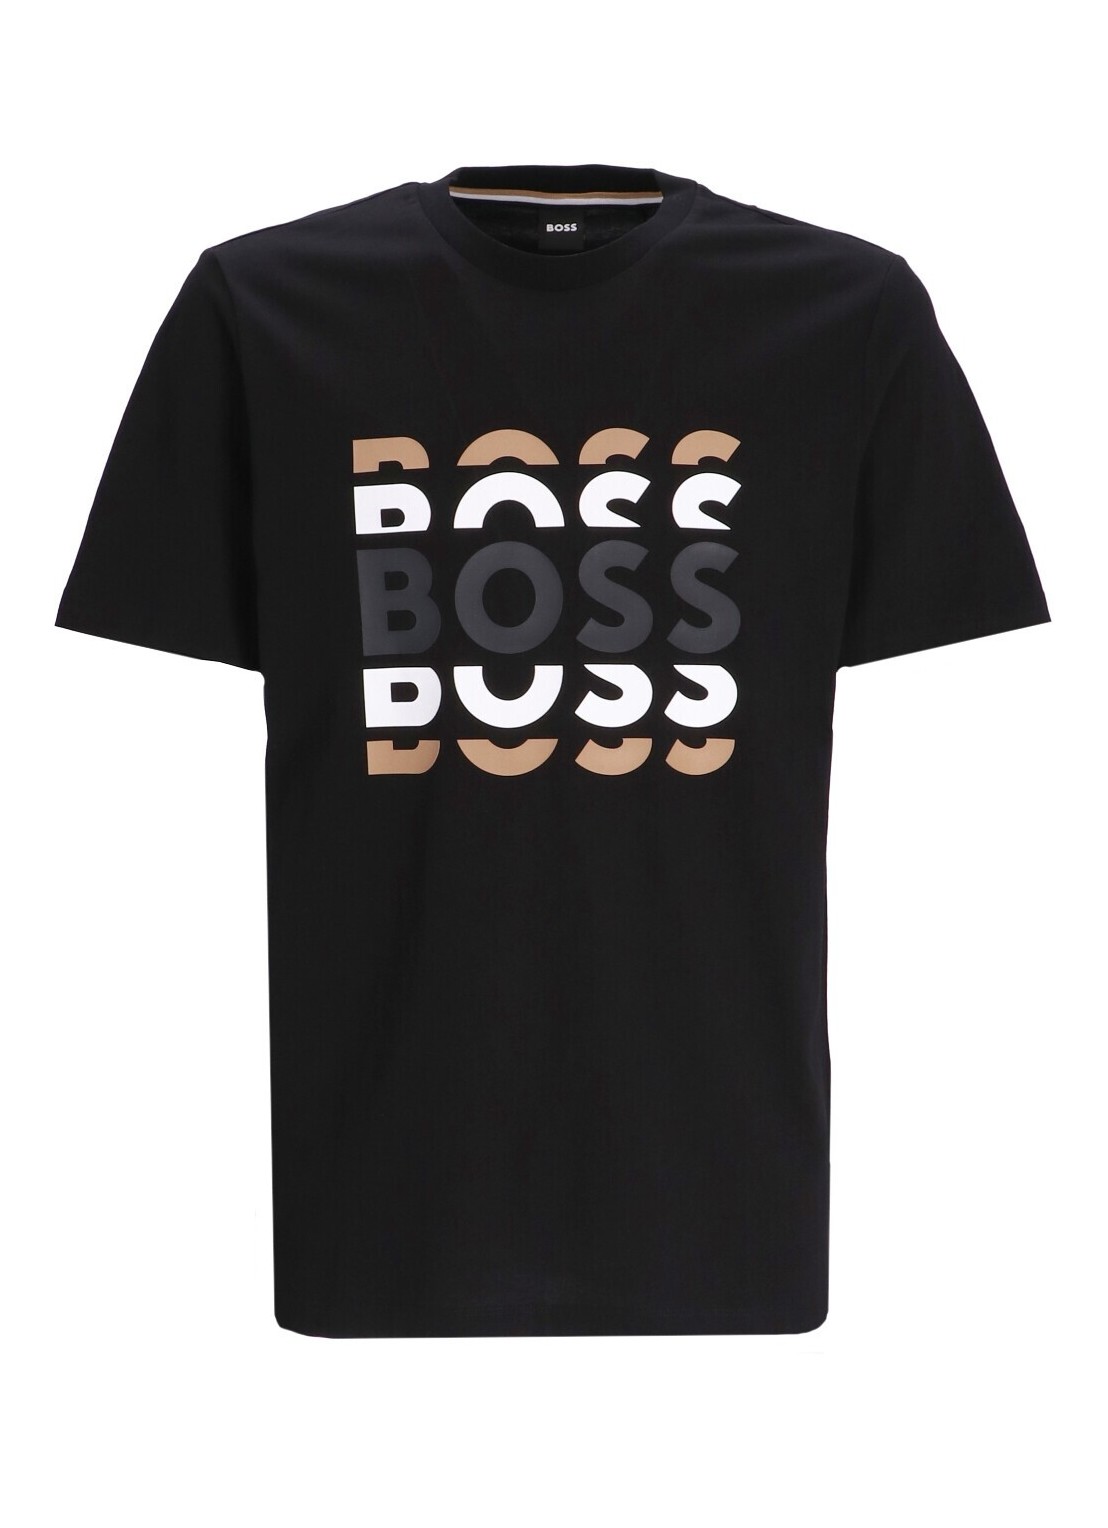 Camiseta boss t-shirt man tiburt 414 50495735 001 talla XXL
 